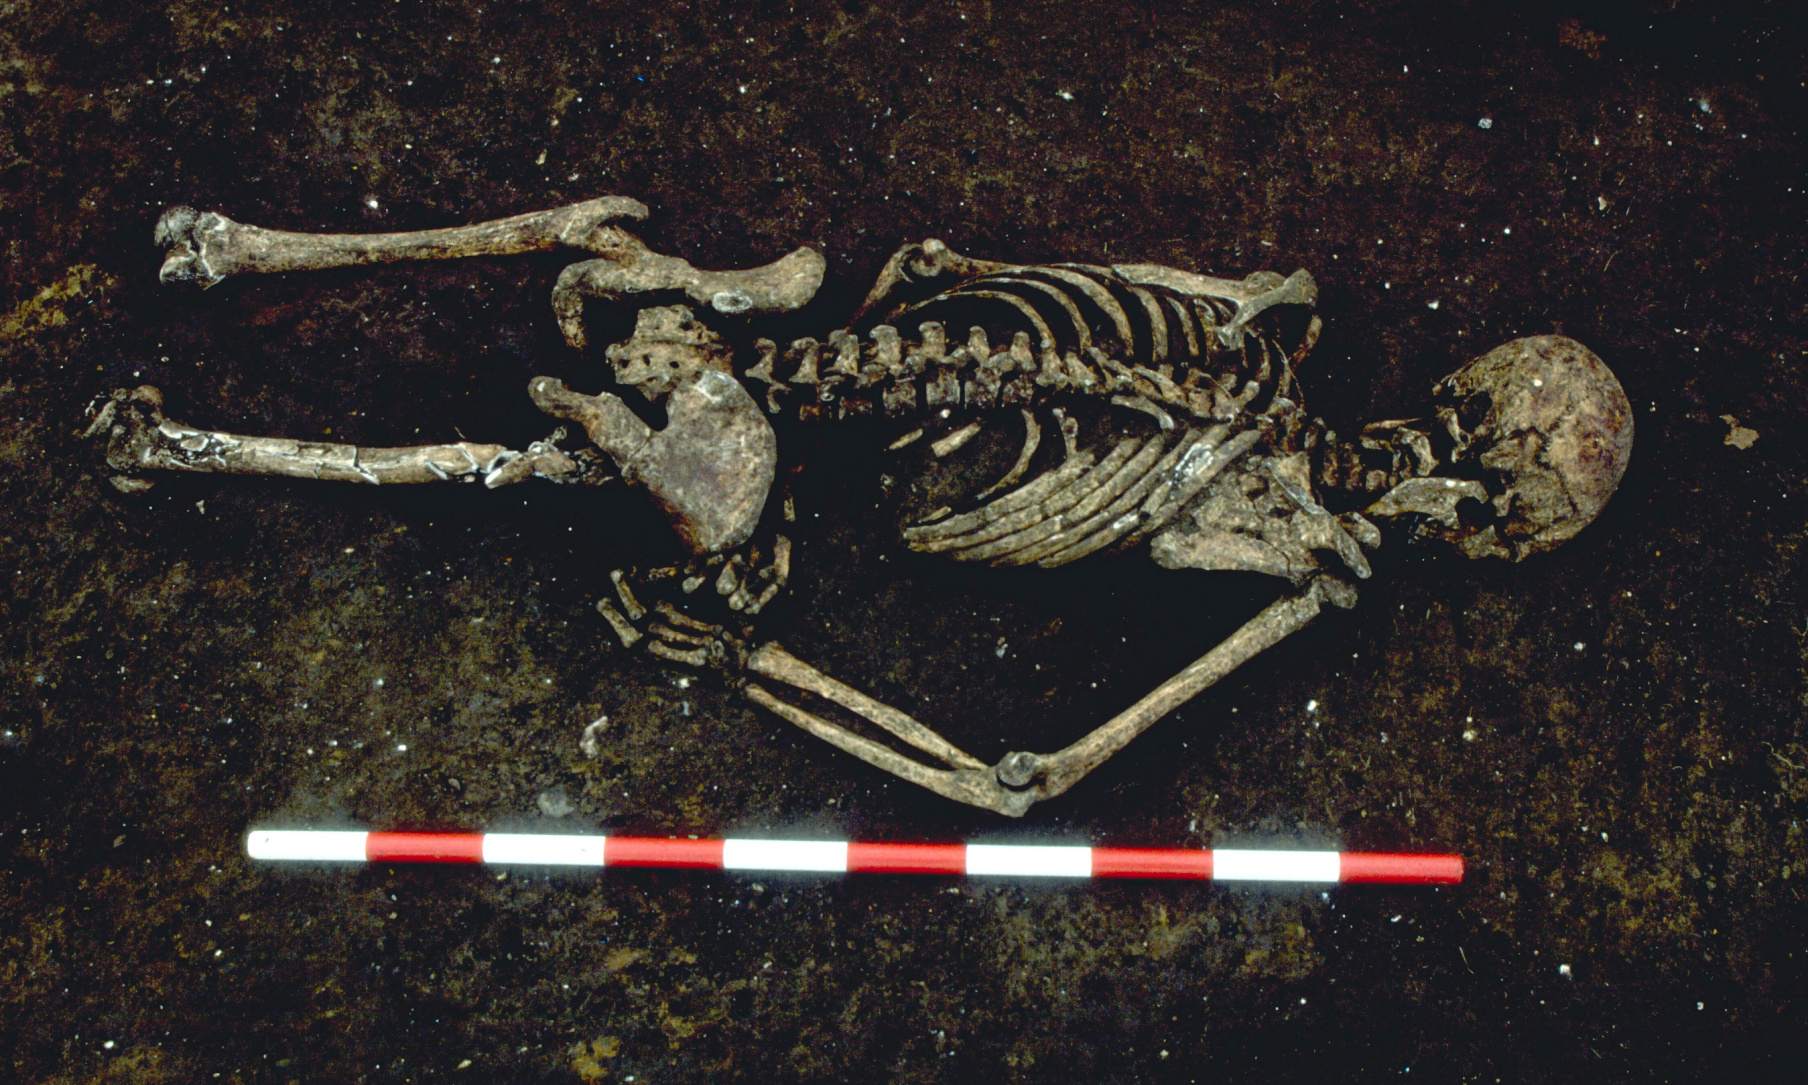 Lo scheletro di 1,500 anni è stato trovato a faccia in giù con il braccio destro piegato a un'angolazione insolita. I ricercatori dello studio affermano che potrebbe essere stato legato quando è morto. La sua parte inferiore del corpo è stata distrutta dallo sviluppo moderno.